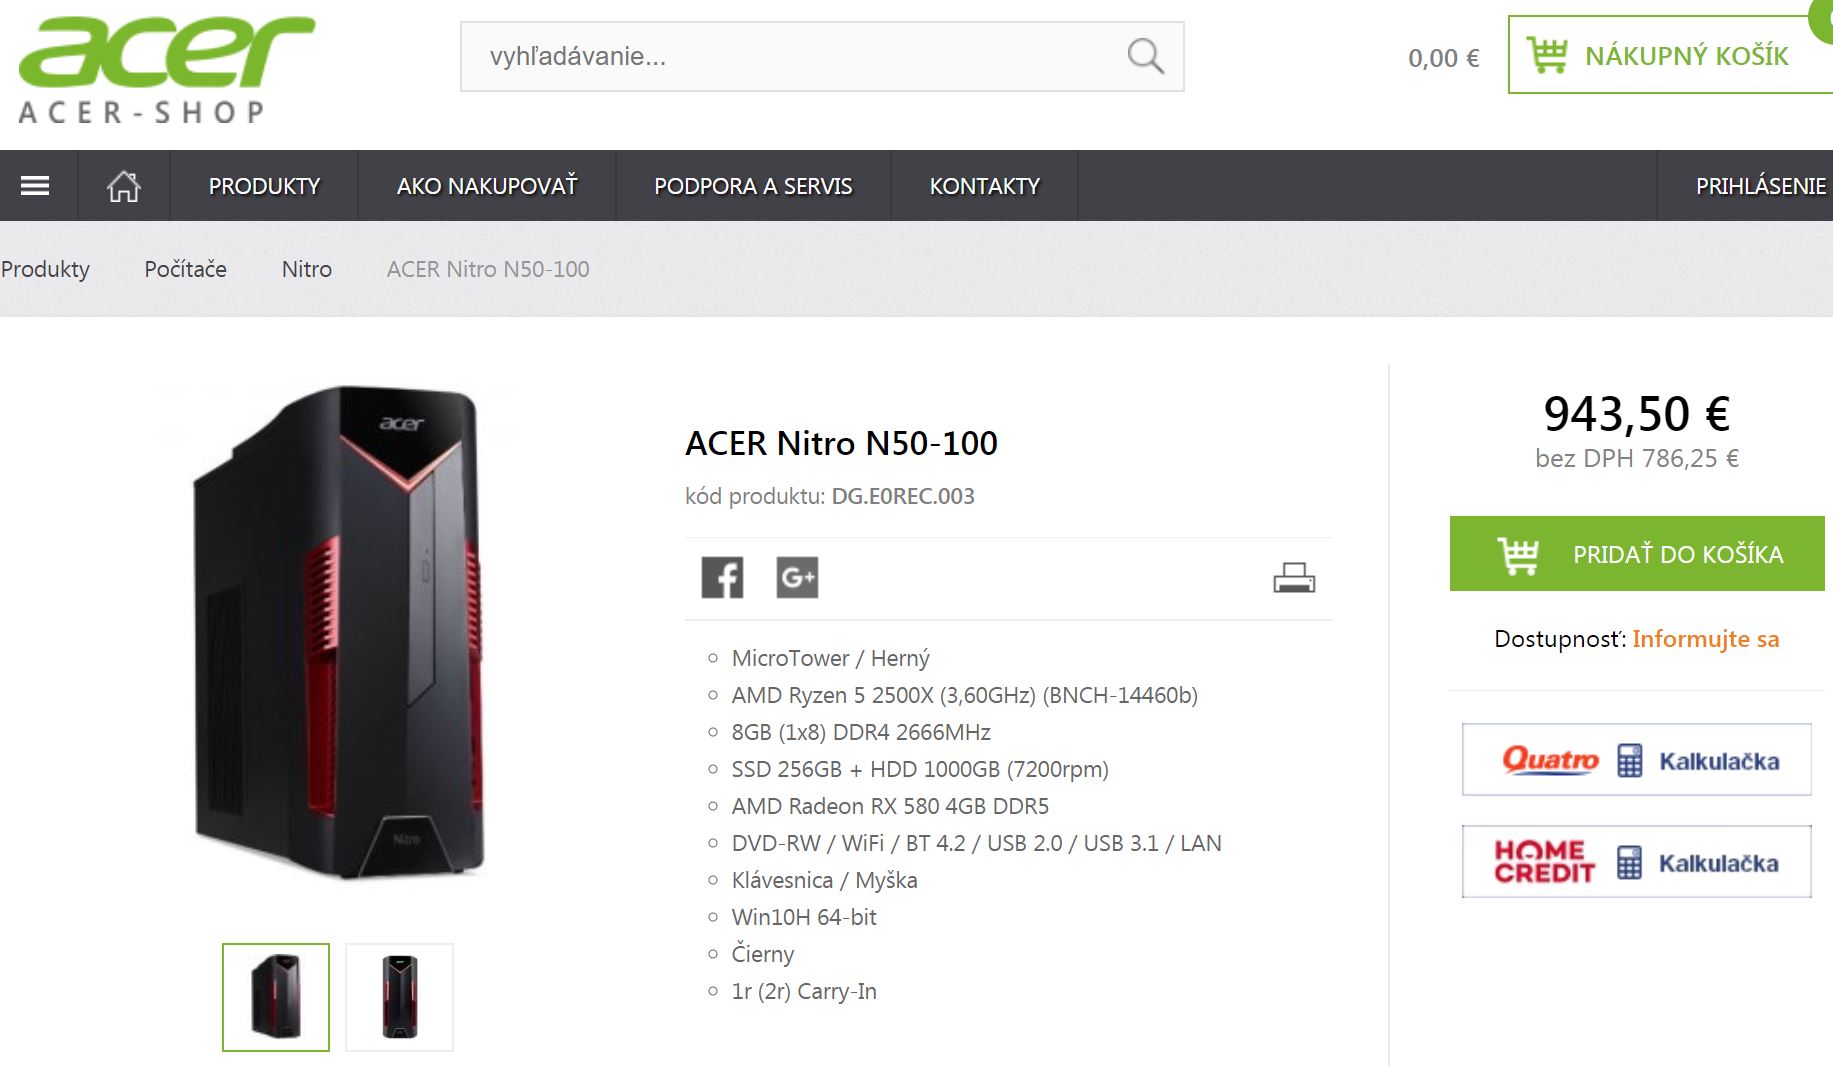 ACER leaks its own Nitro N50-100 desktop with Ryzen 5 2500X ...